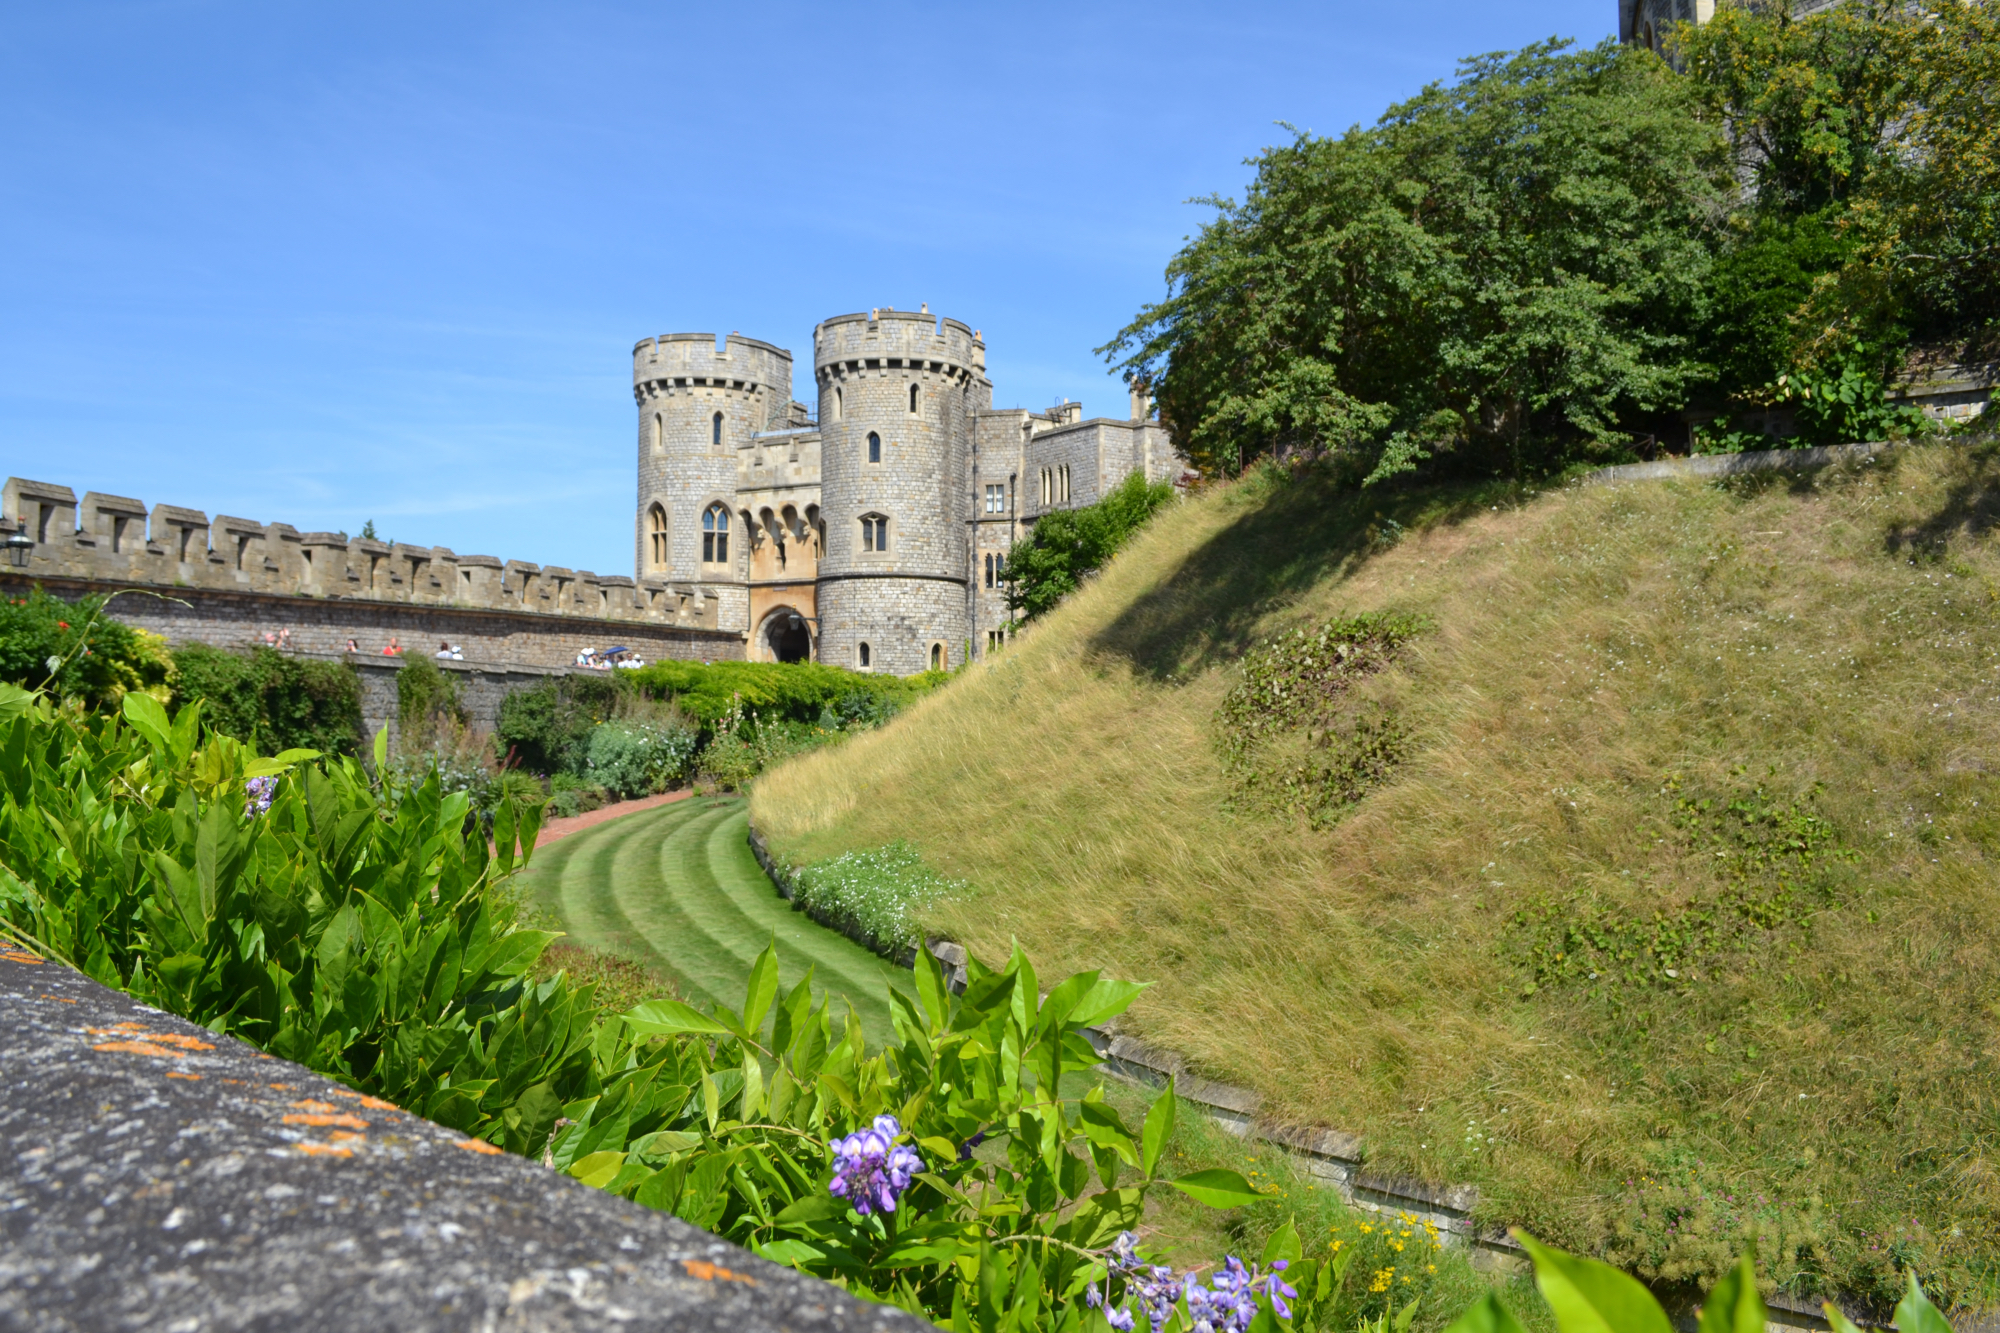 Traumhaft schöner Sommertag in Windsor und Besuch des Windsor Castle.